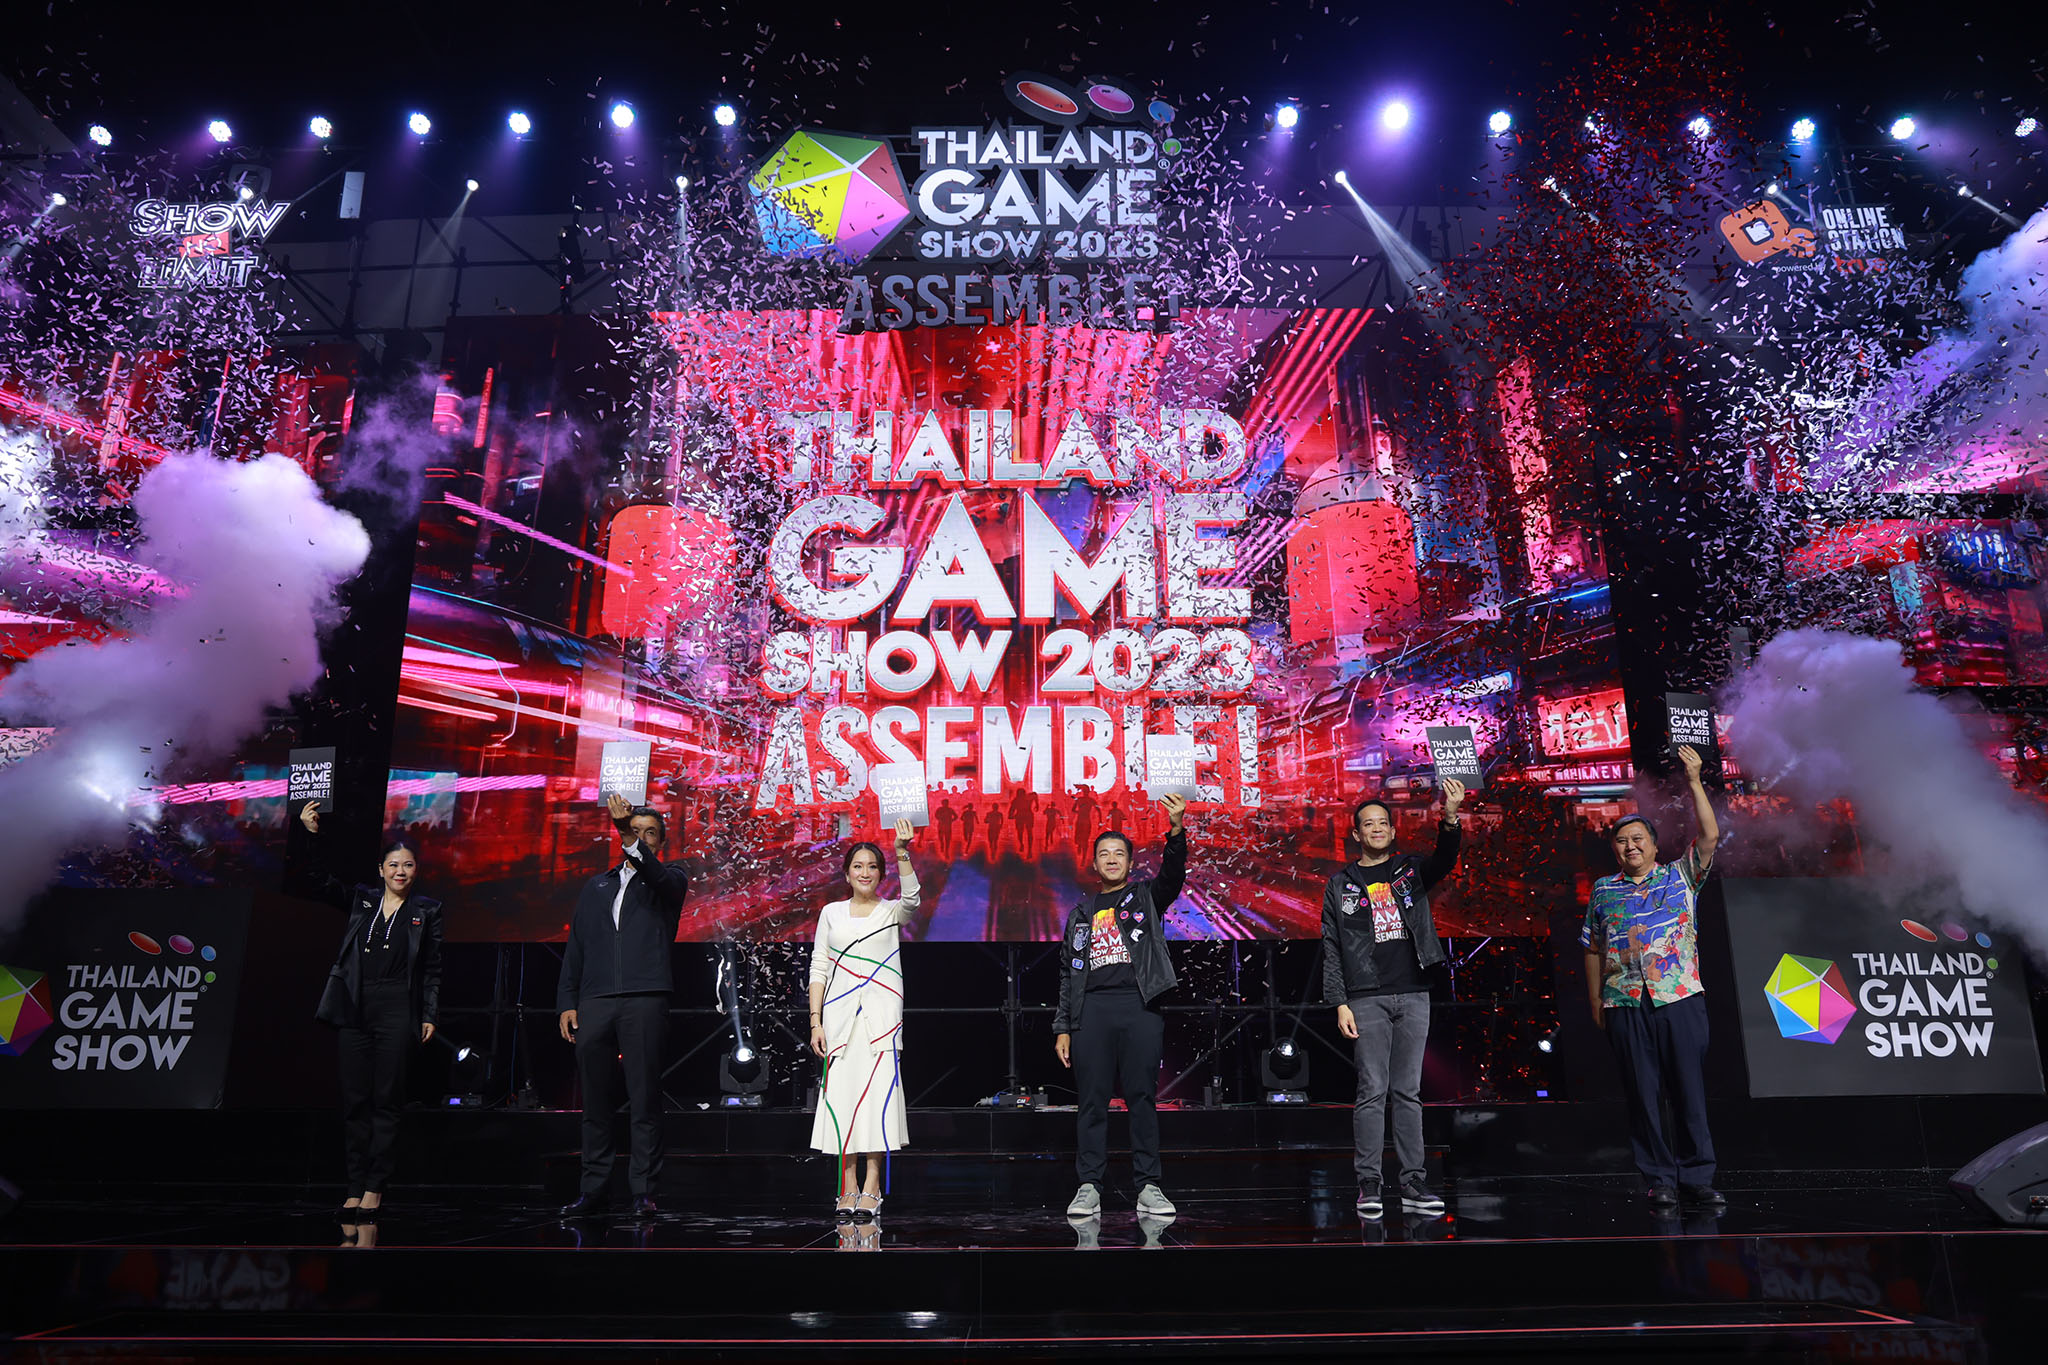 Thailand Game Show รวมพลัง Wonder Festival Bangkok 2023 จัดเต็มความมันส์ตลอด 3 วัน 20-22 ต.ค. นี้ ณ ศูนย์ประชุมแห่งชาติสิริกิติ์